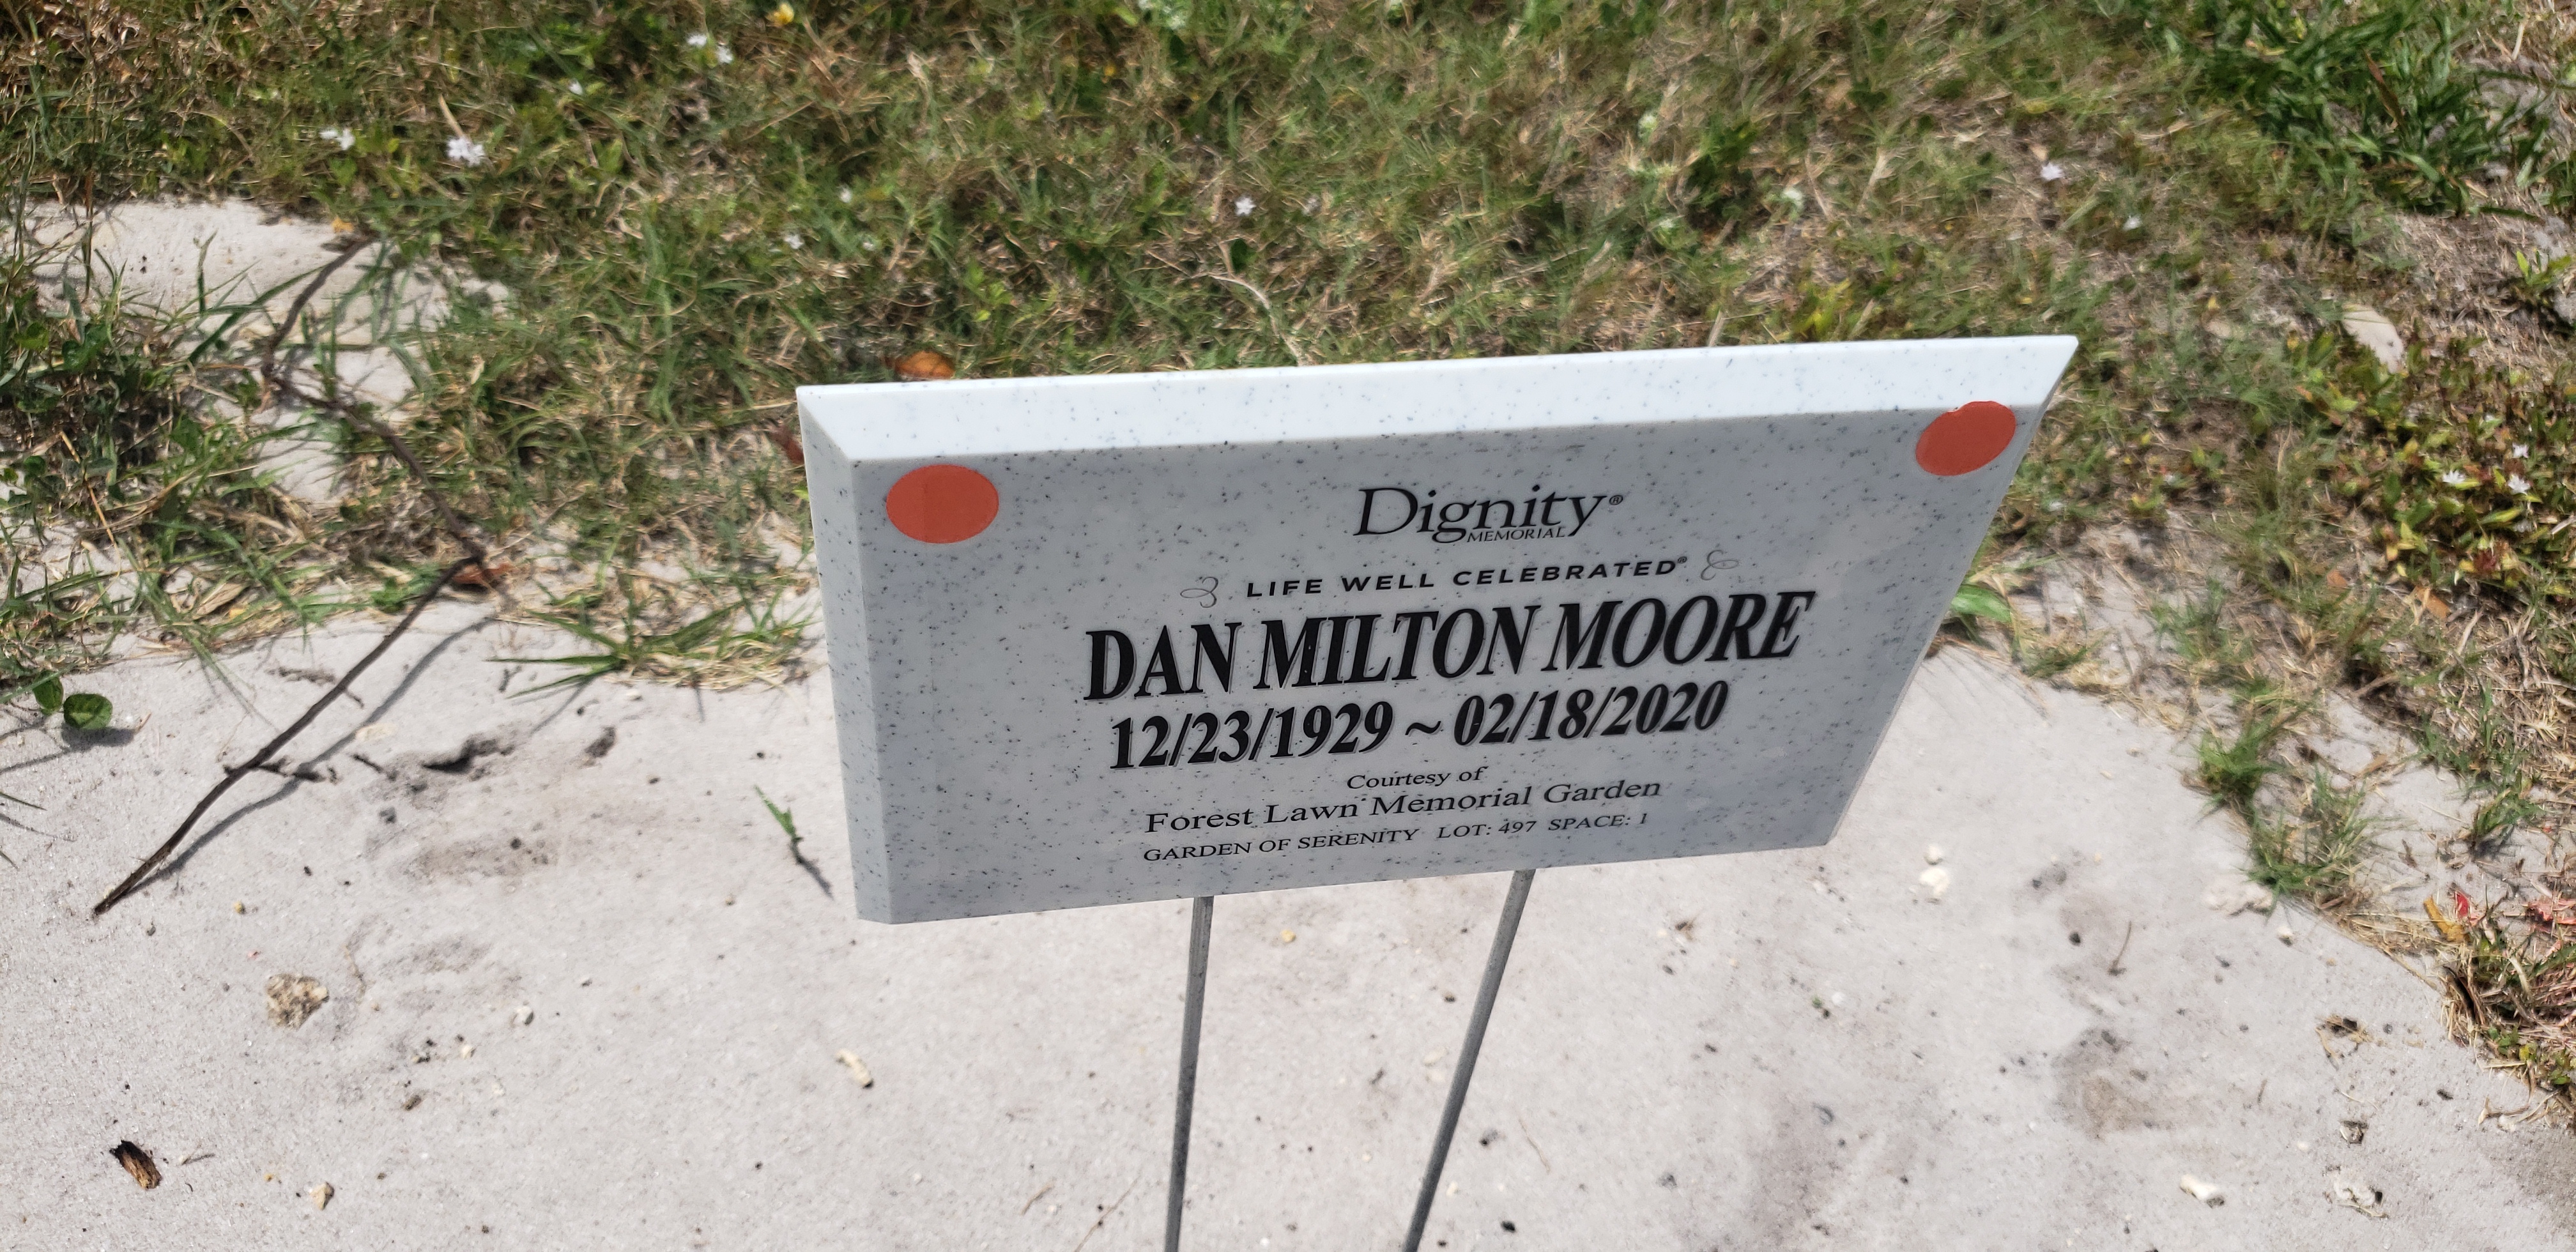 Dan Milton Moore